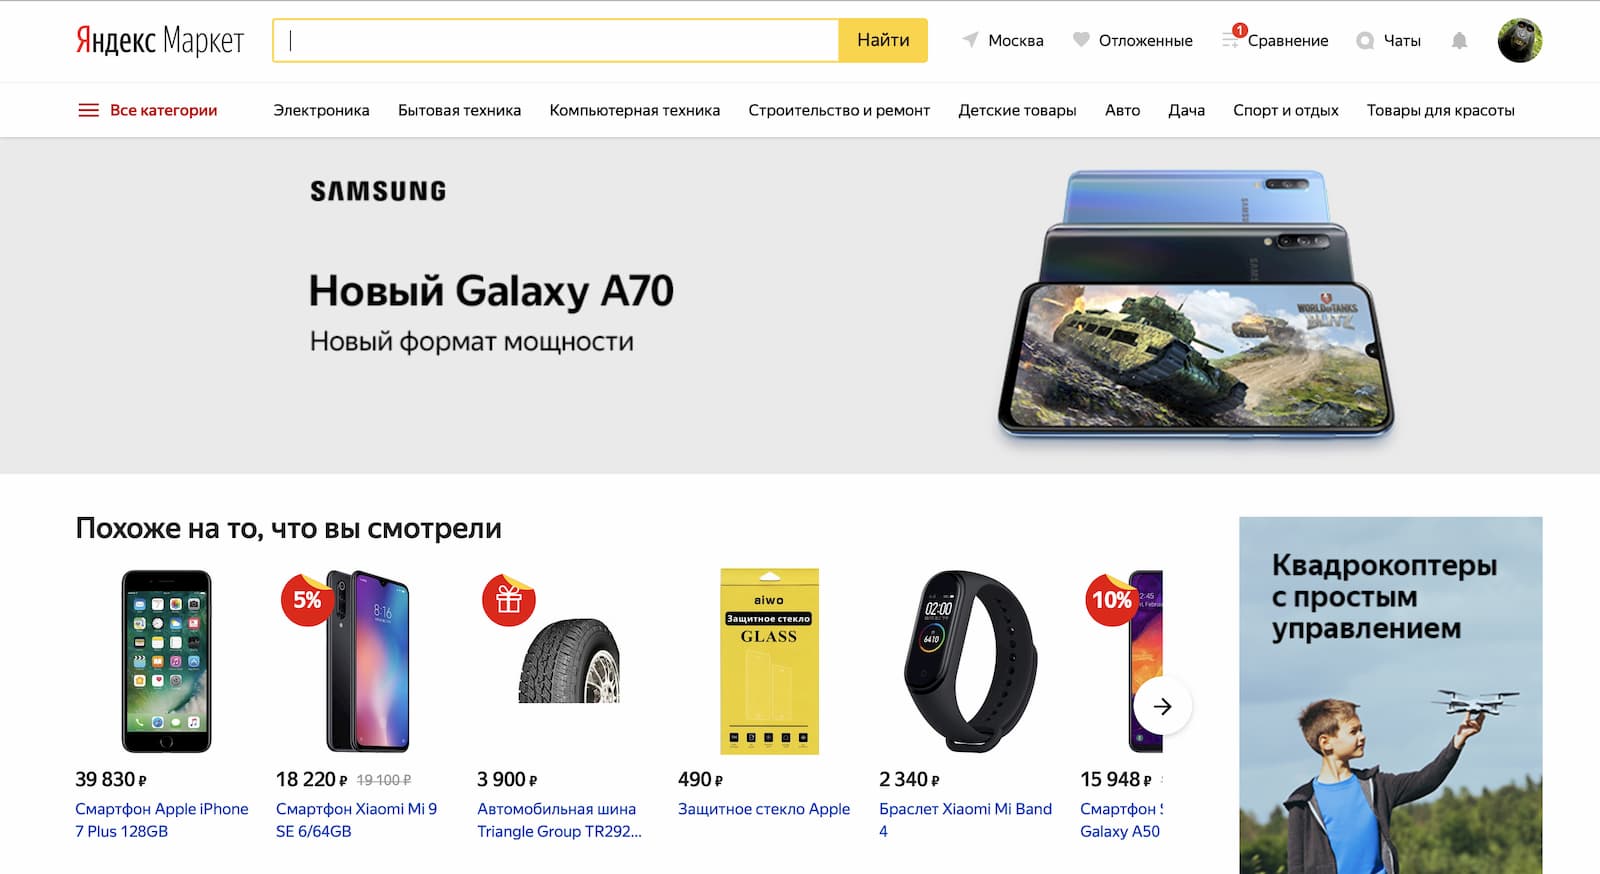 Скриншот главной страницы Яндекс Маркета